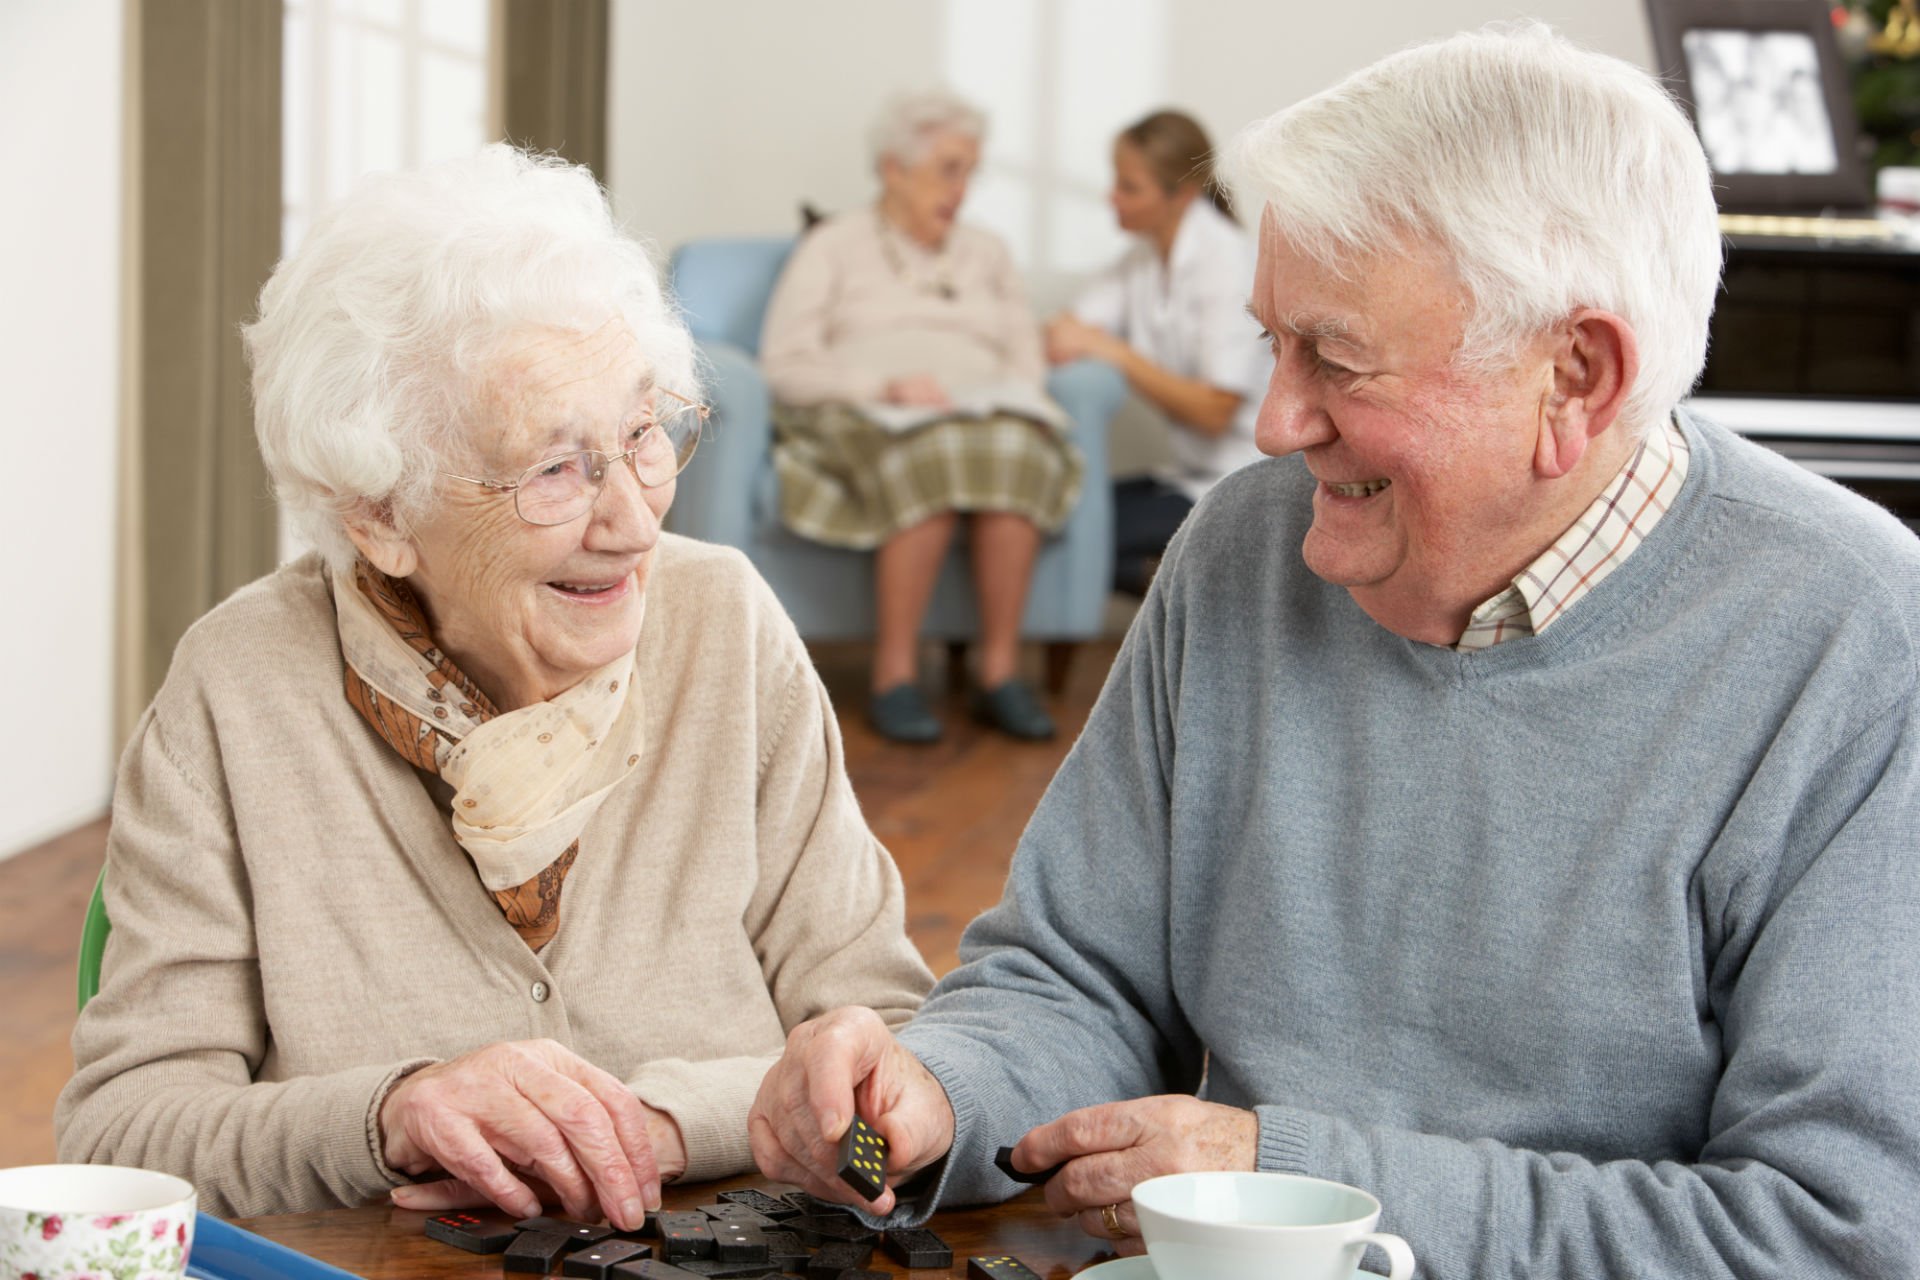 Marigliano investe nella socializzazione degli anziani : ecco il bando per spettacoli e iniziative gratuite